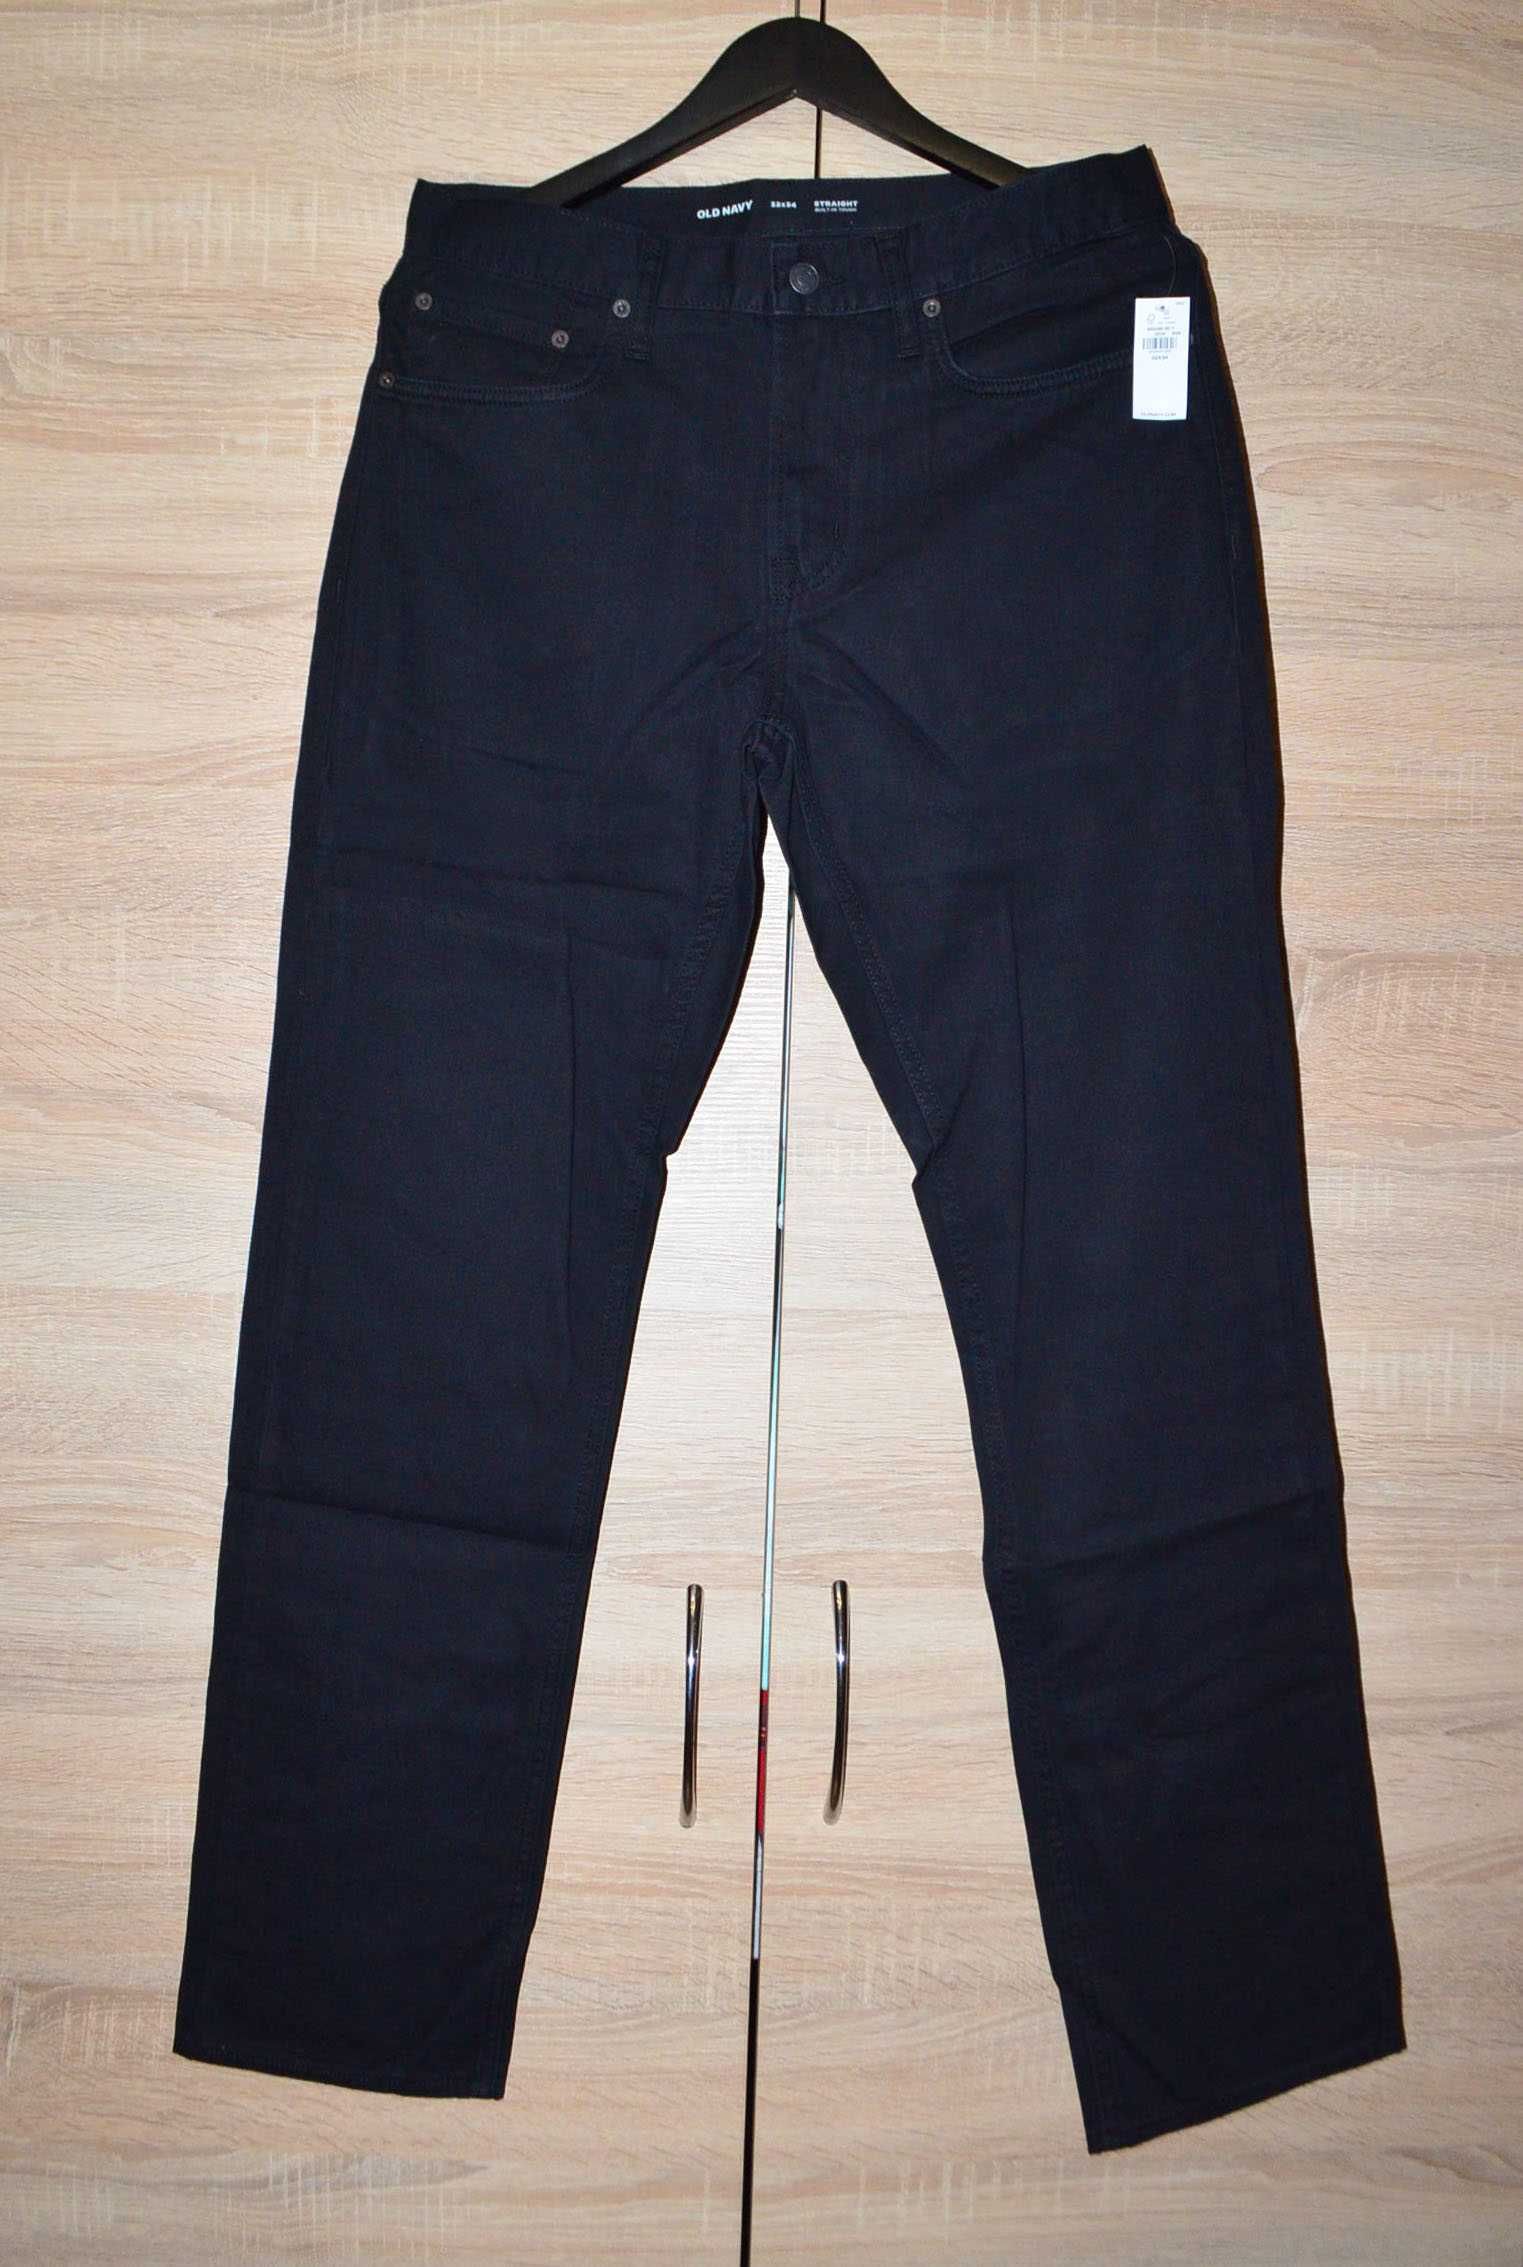 Прямые черные джинсы Old Navy 100% хлопок 32 размер